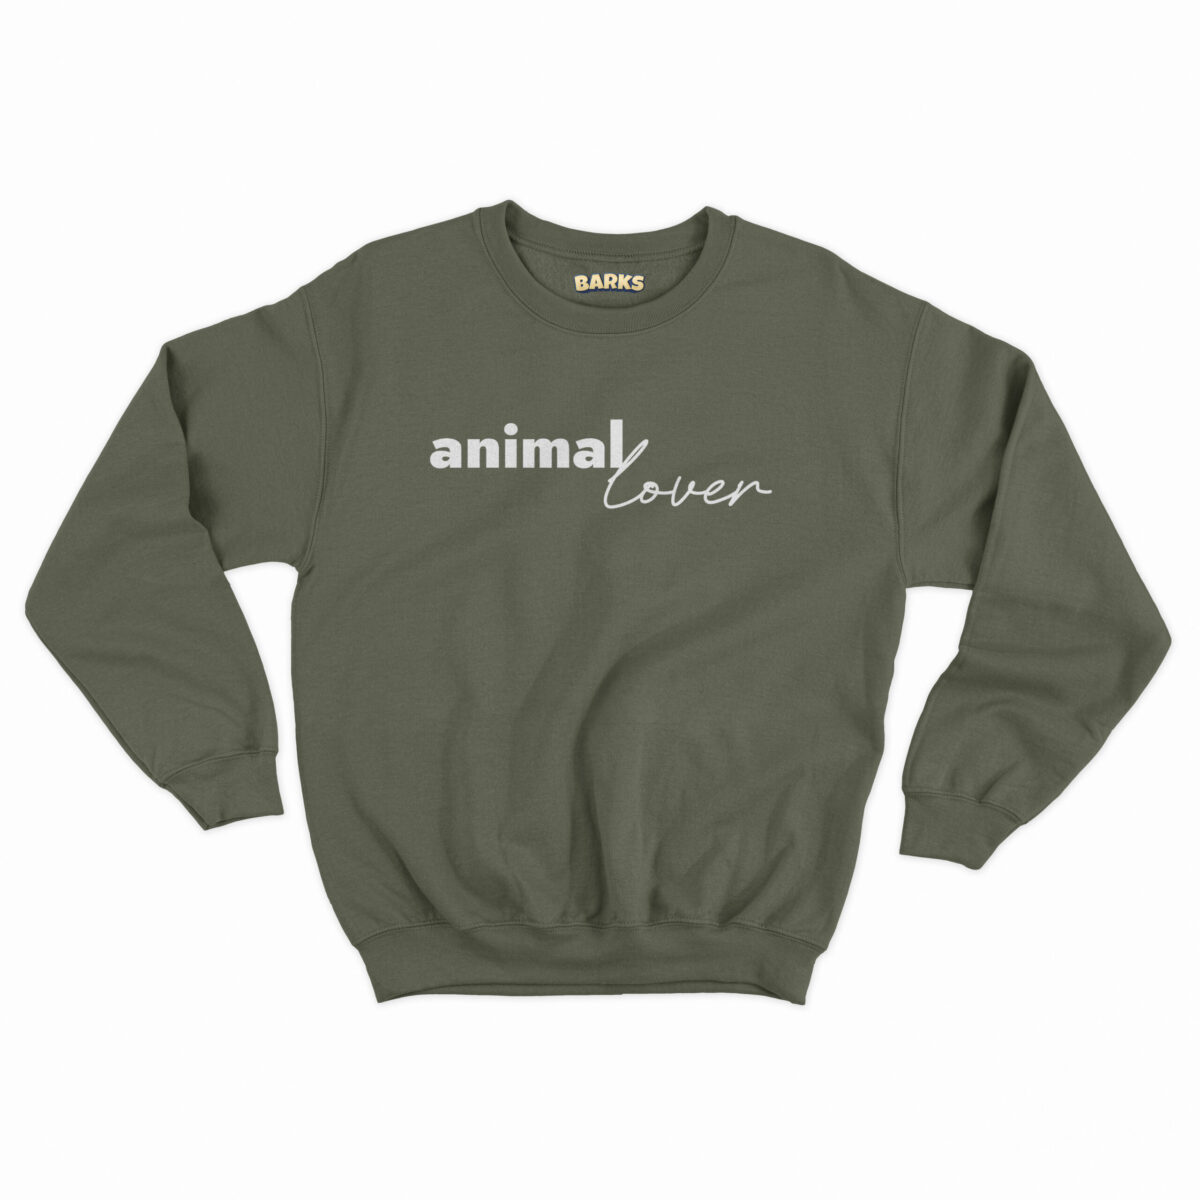 barks sweater animal lover khaki scaled